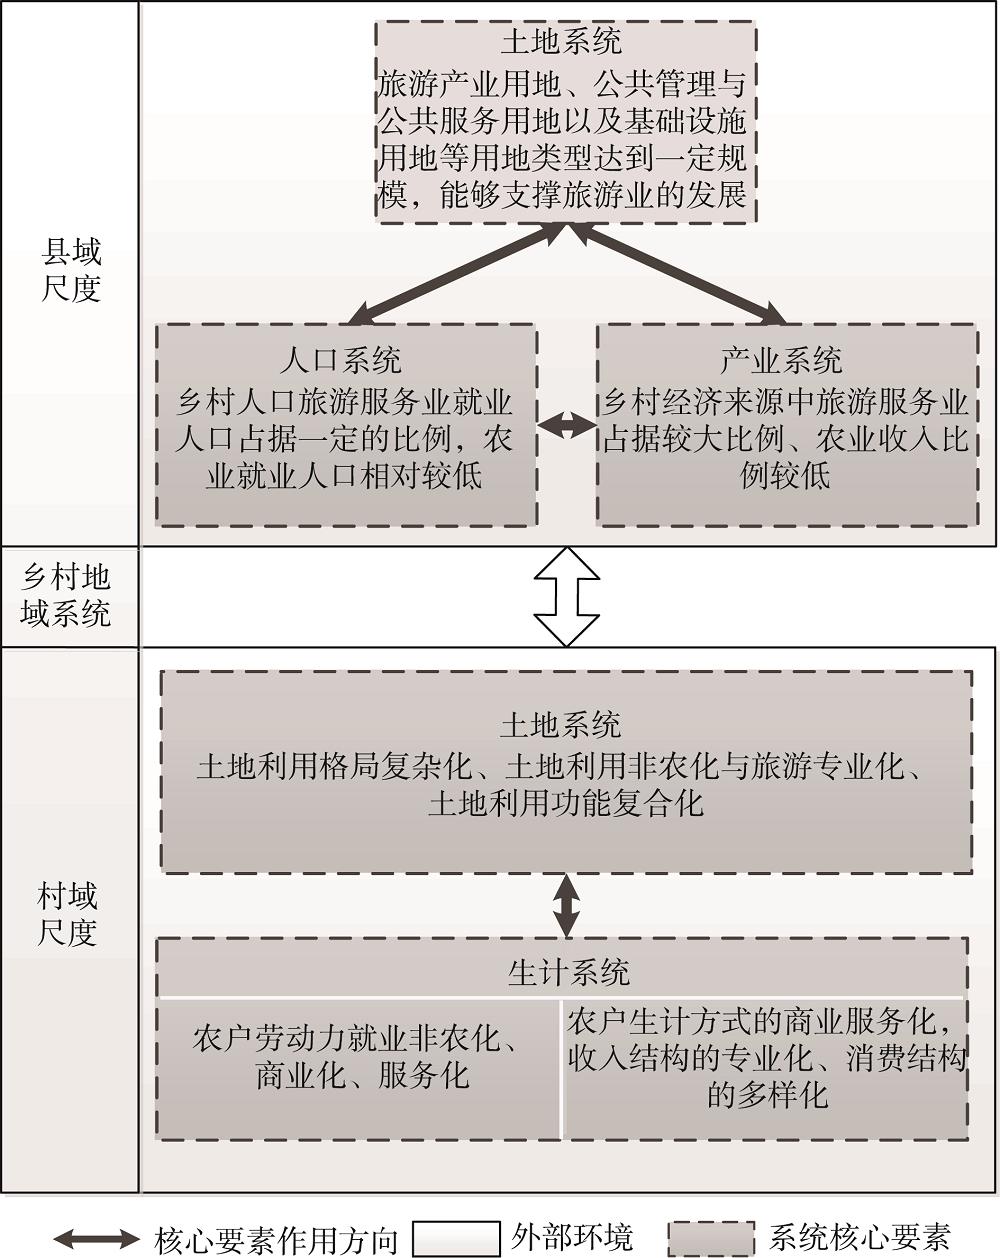 旅游乡村地域系统概念模型Fig.2